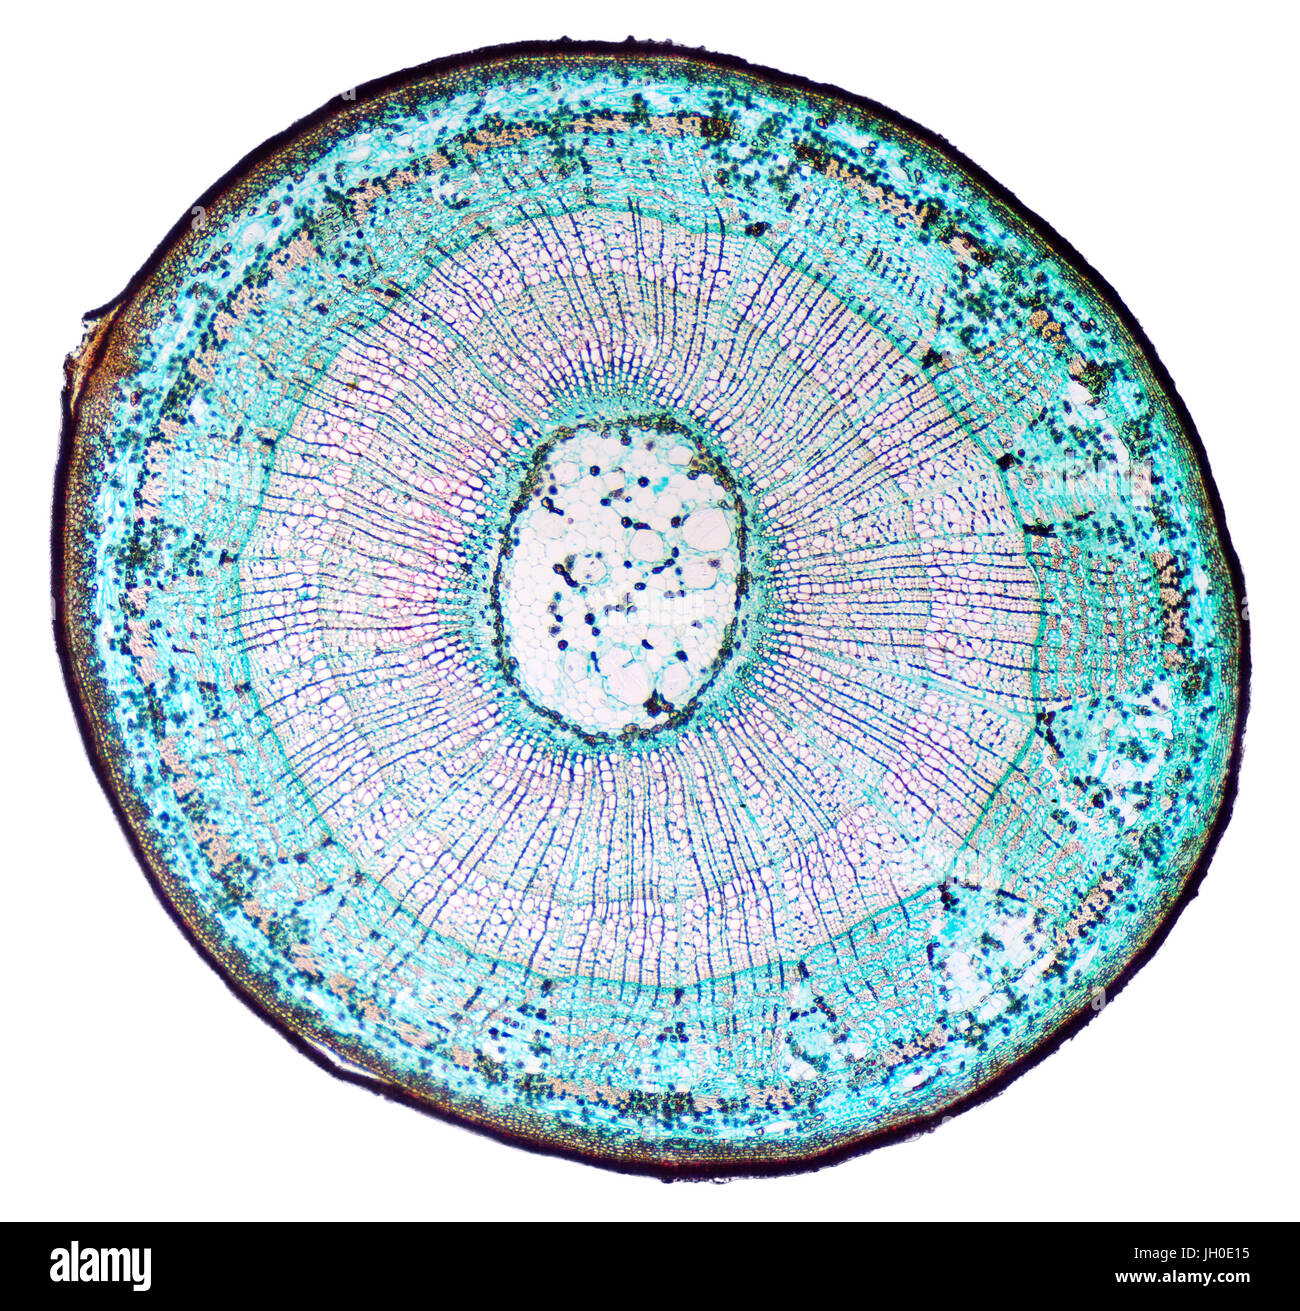 Lindenholz Stamm Querschnitt. Lichtmikroskop Folie mit Microsection eines drei Jahre alten Linde Stammes. Deutlich sichtbare Jahresringe. Stockfoto